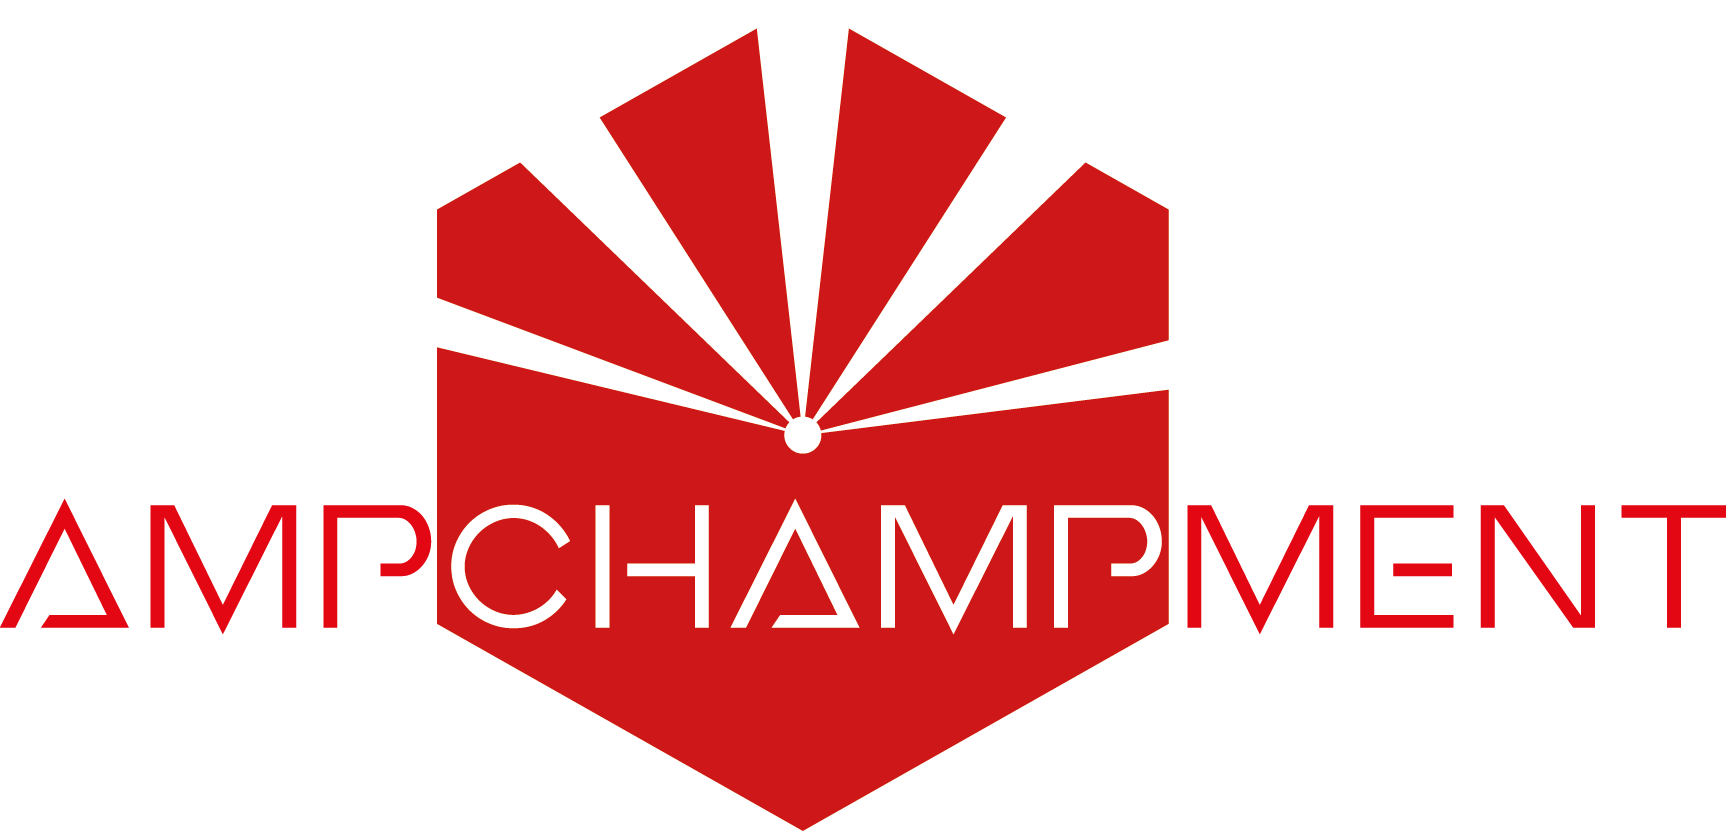 Ampchampment Logo